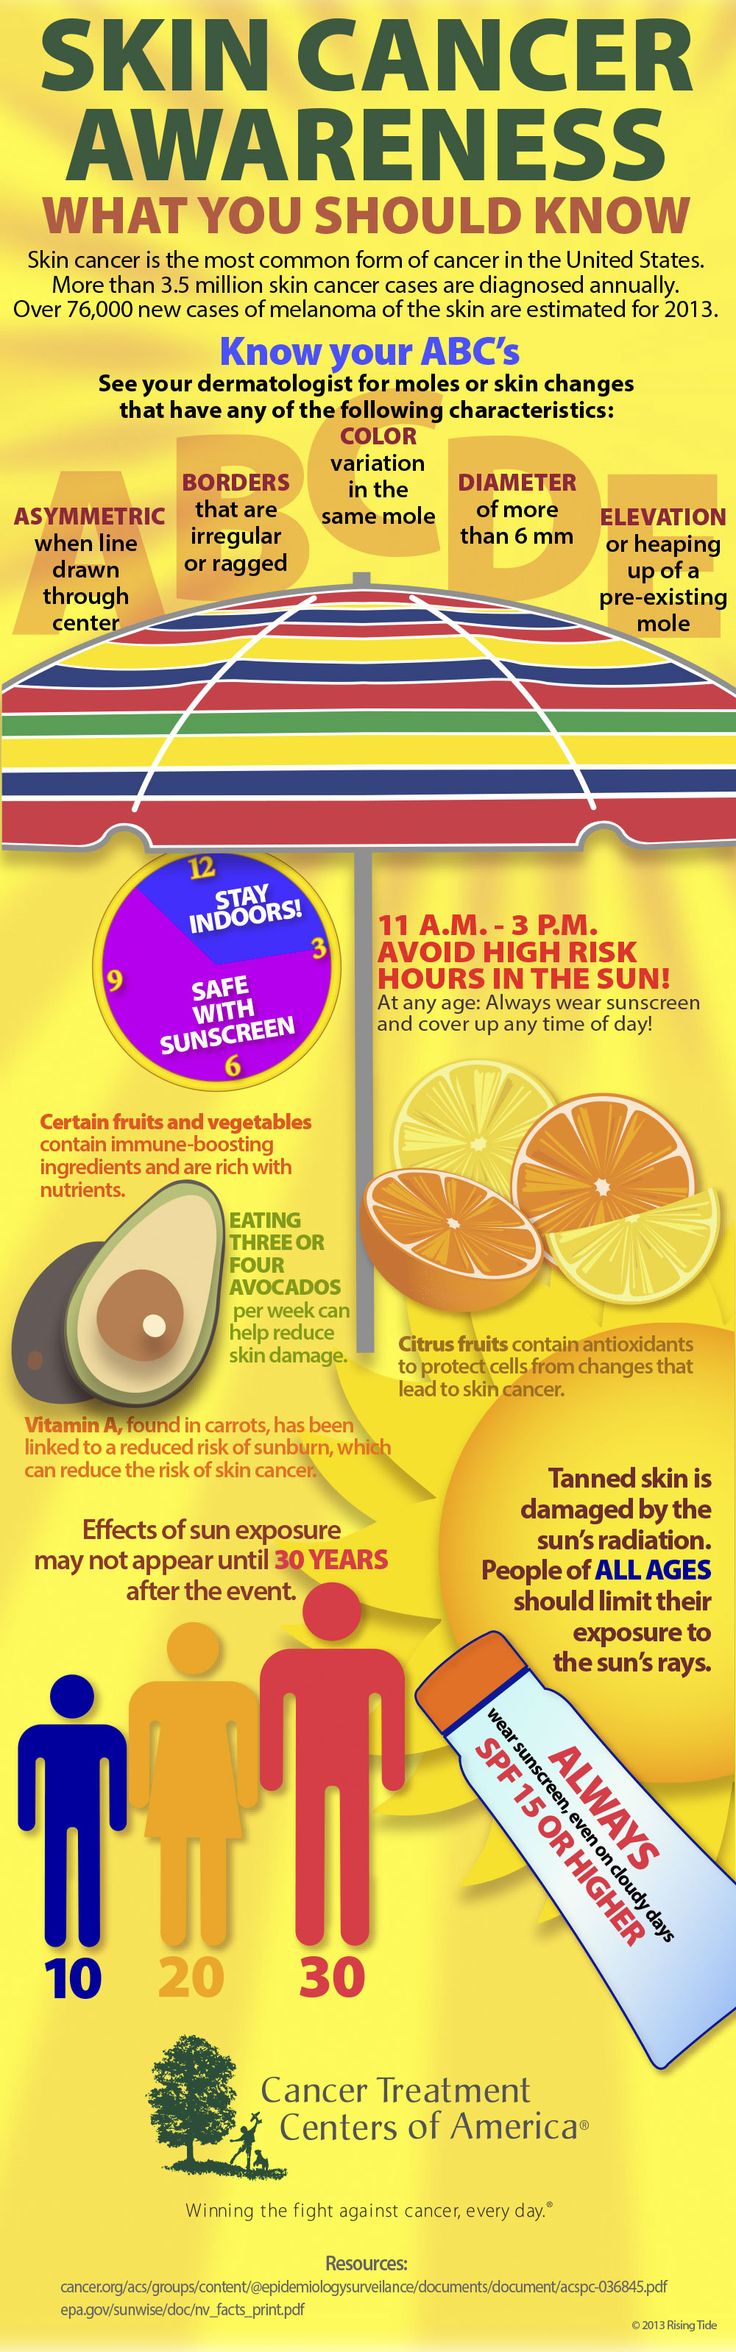 Get smarter about skin cancer